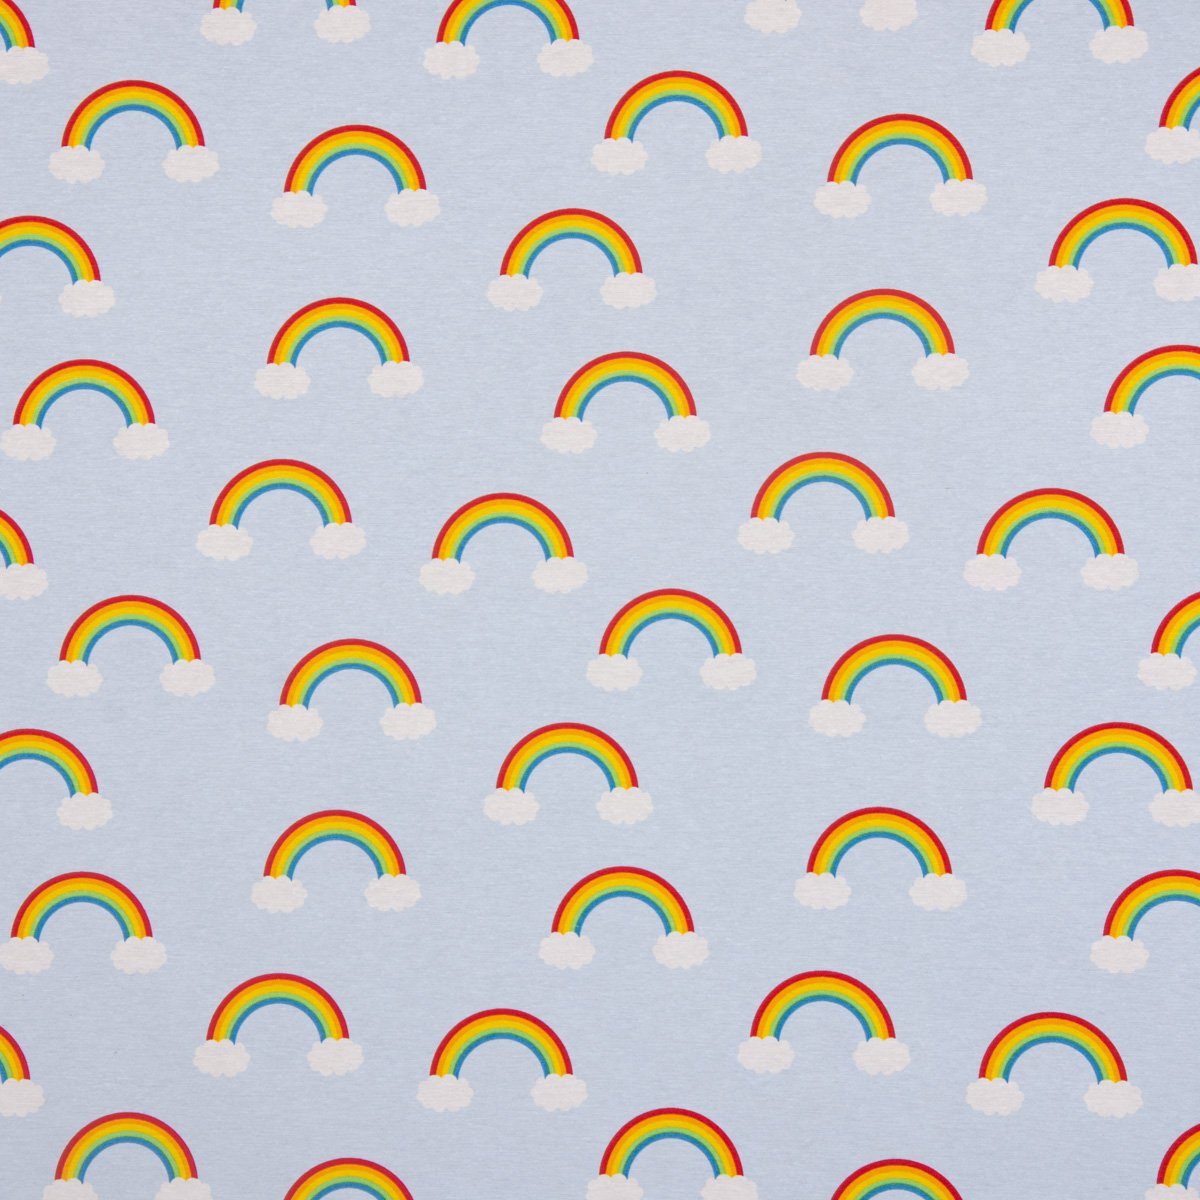 SCHÖNER LEBEN. Stoff Dekostoff Canvas Baumwollstoff Wolken Regenbogen hellblau bunt 1,40m